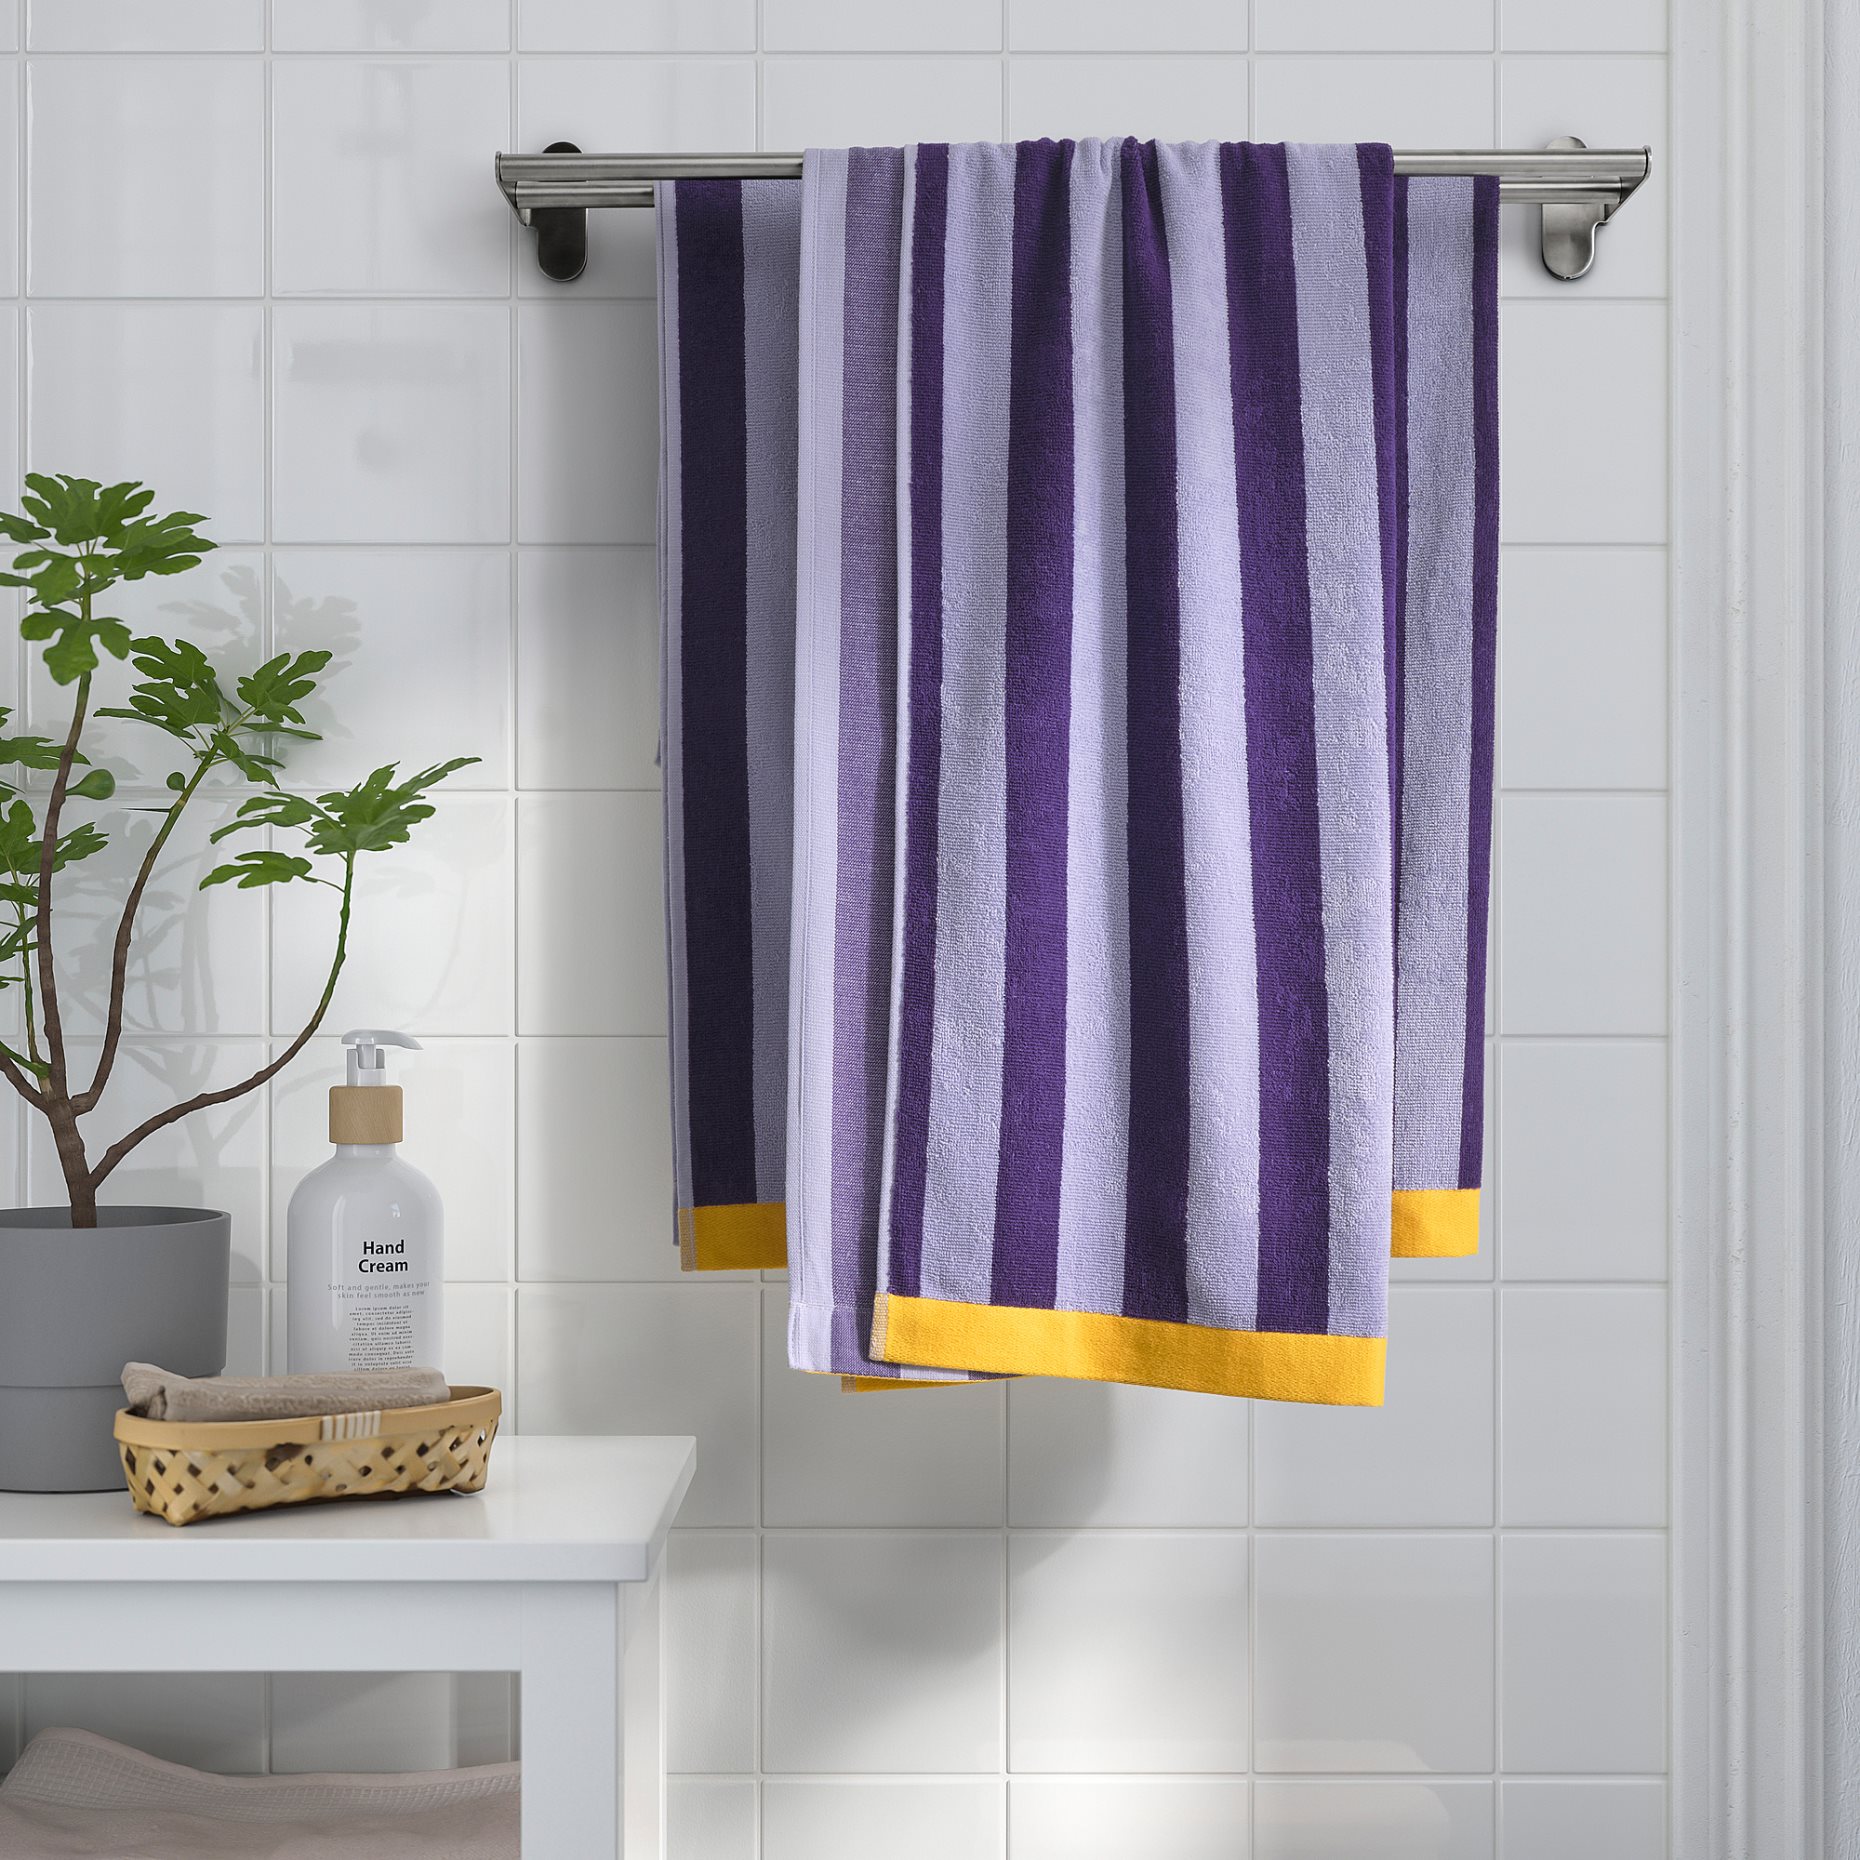 ENSKOTTMAL, πετσέτα μπάνιου/ριγέ, 70x140 cm, 405.469.23